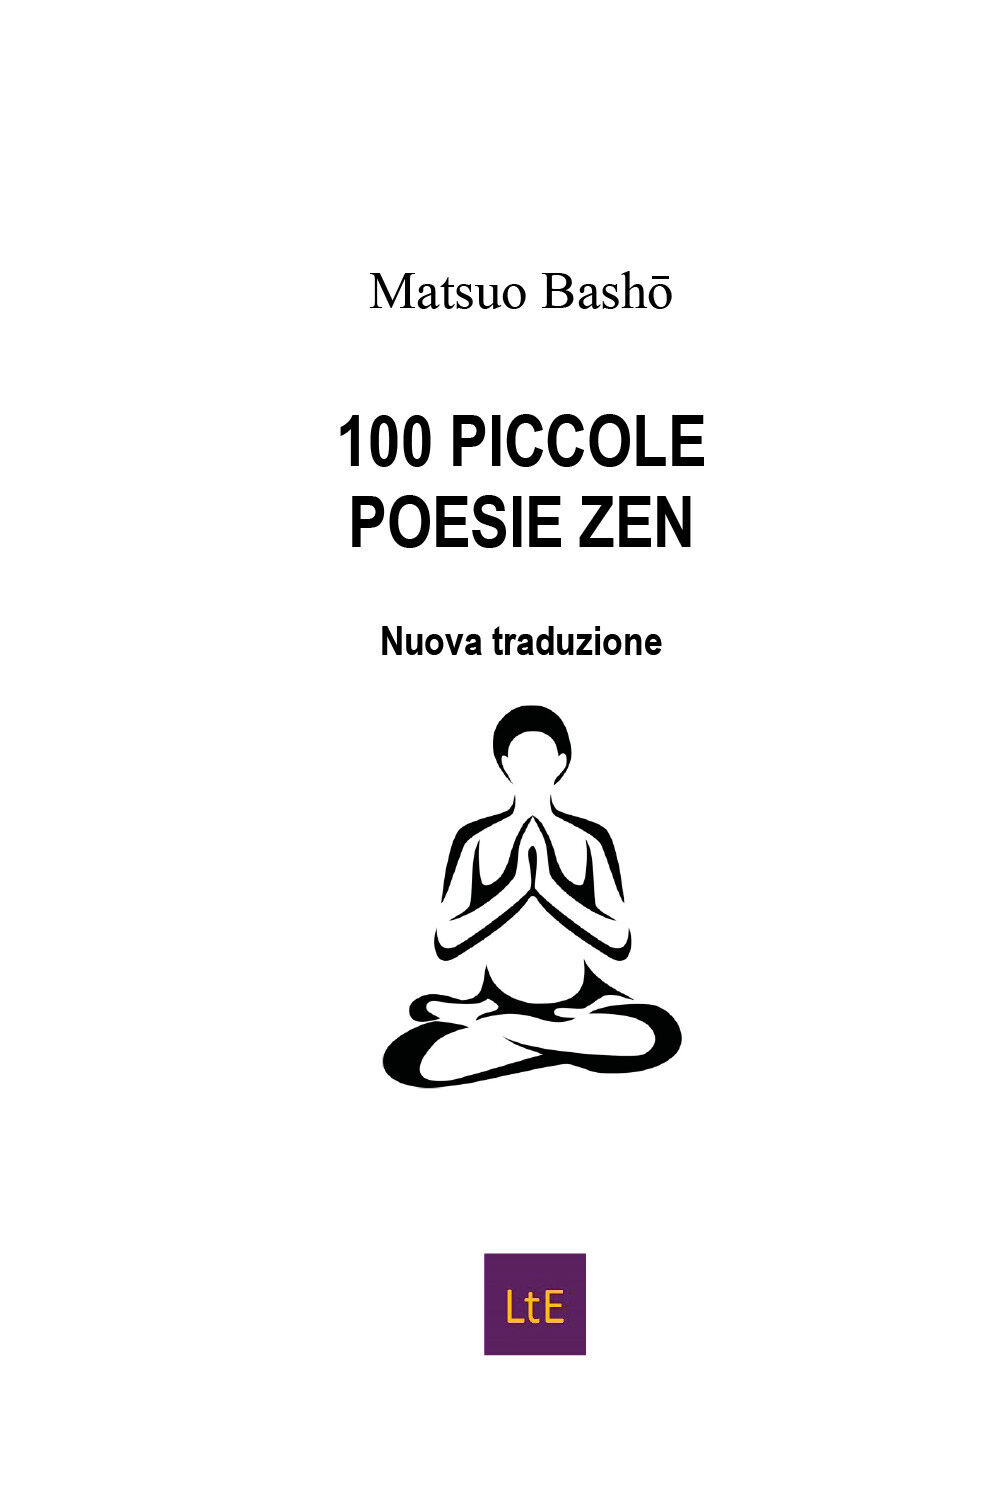 100 piccole poesie zen di Matsuo Bash?,  2020,  Latorre-editore